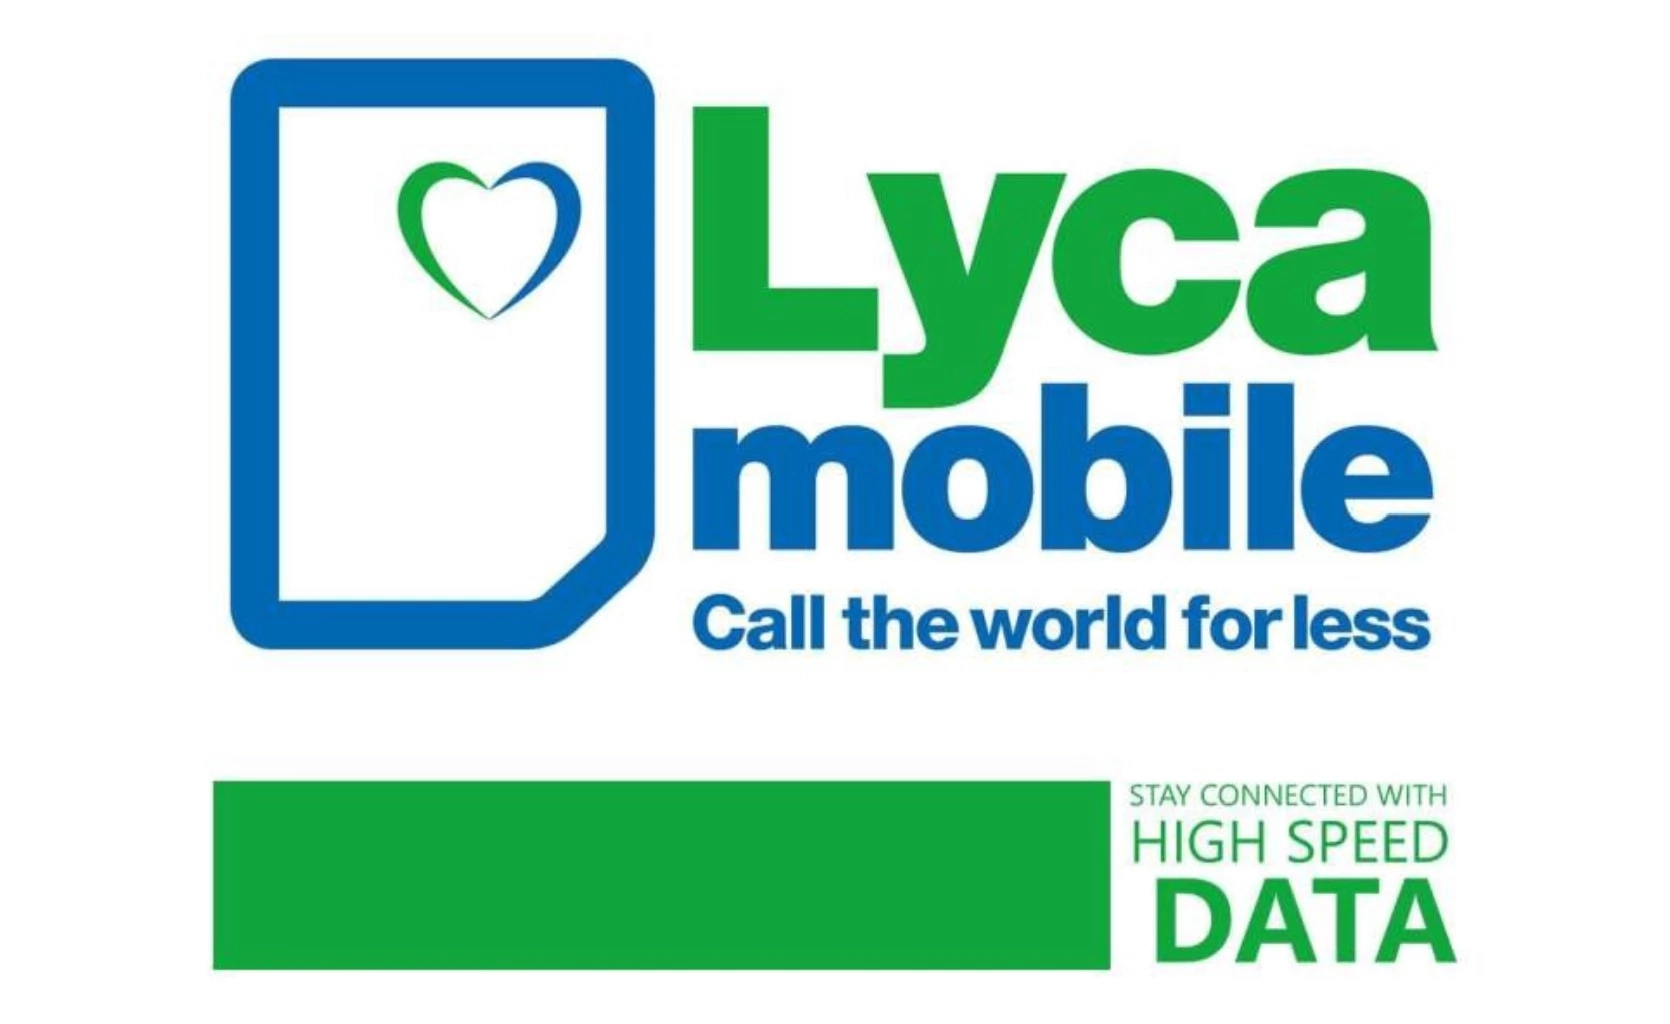 How to buy data on Lycamobile Uganda